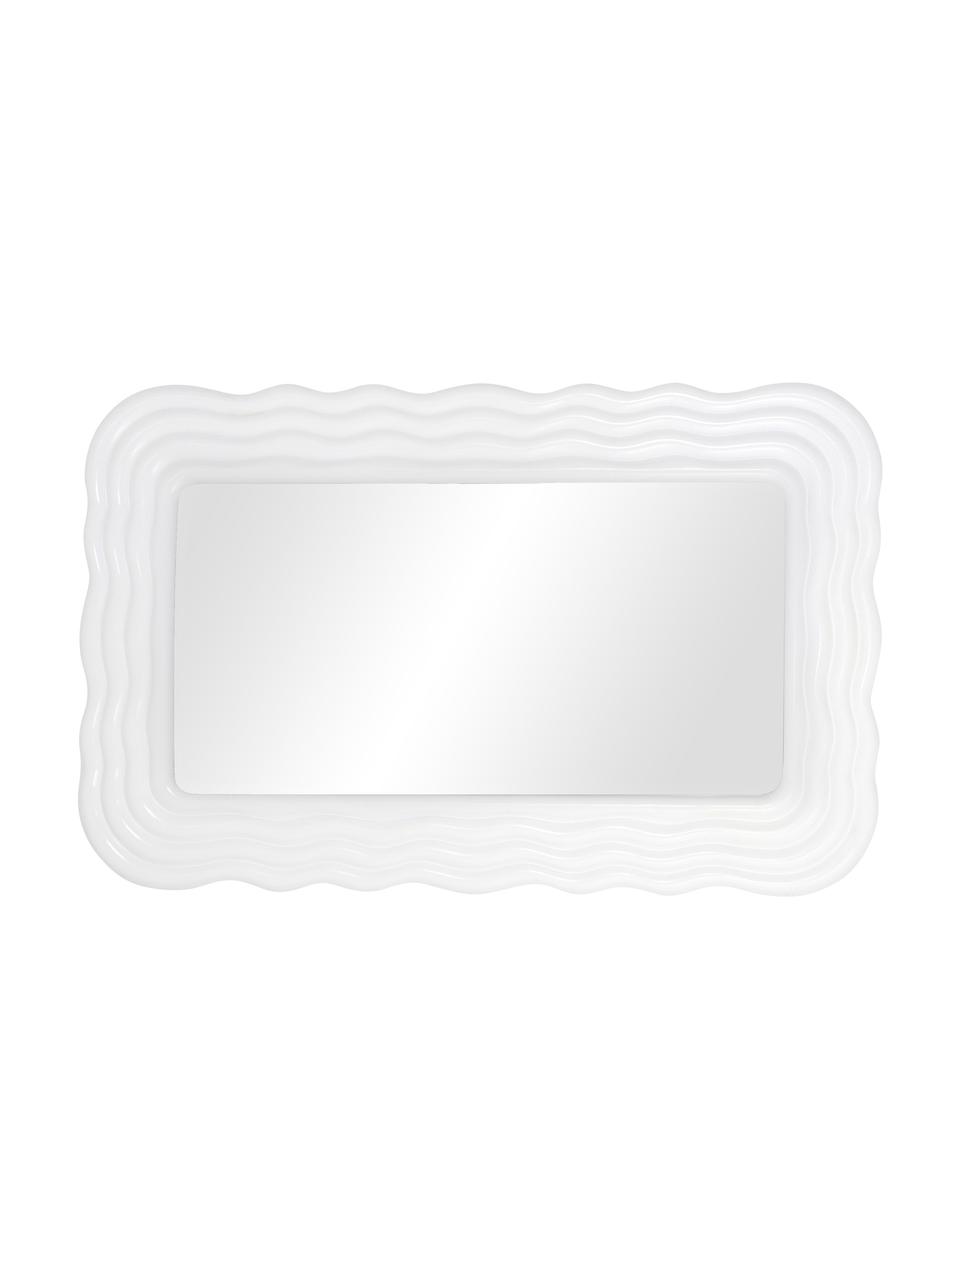 Wandspiegel Huntington mit weißem Kunststoffrahmen, Rahmen: Polyresin, Spiegelfläche: Spiegelglas, Weiß, B 50 x H 80 cm